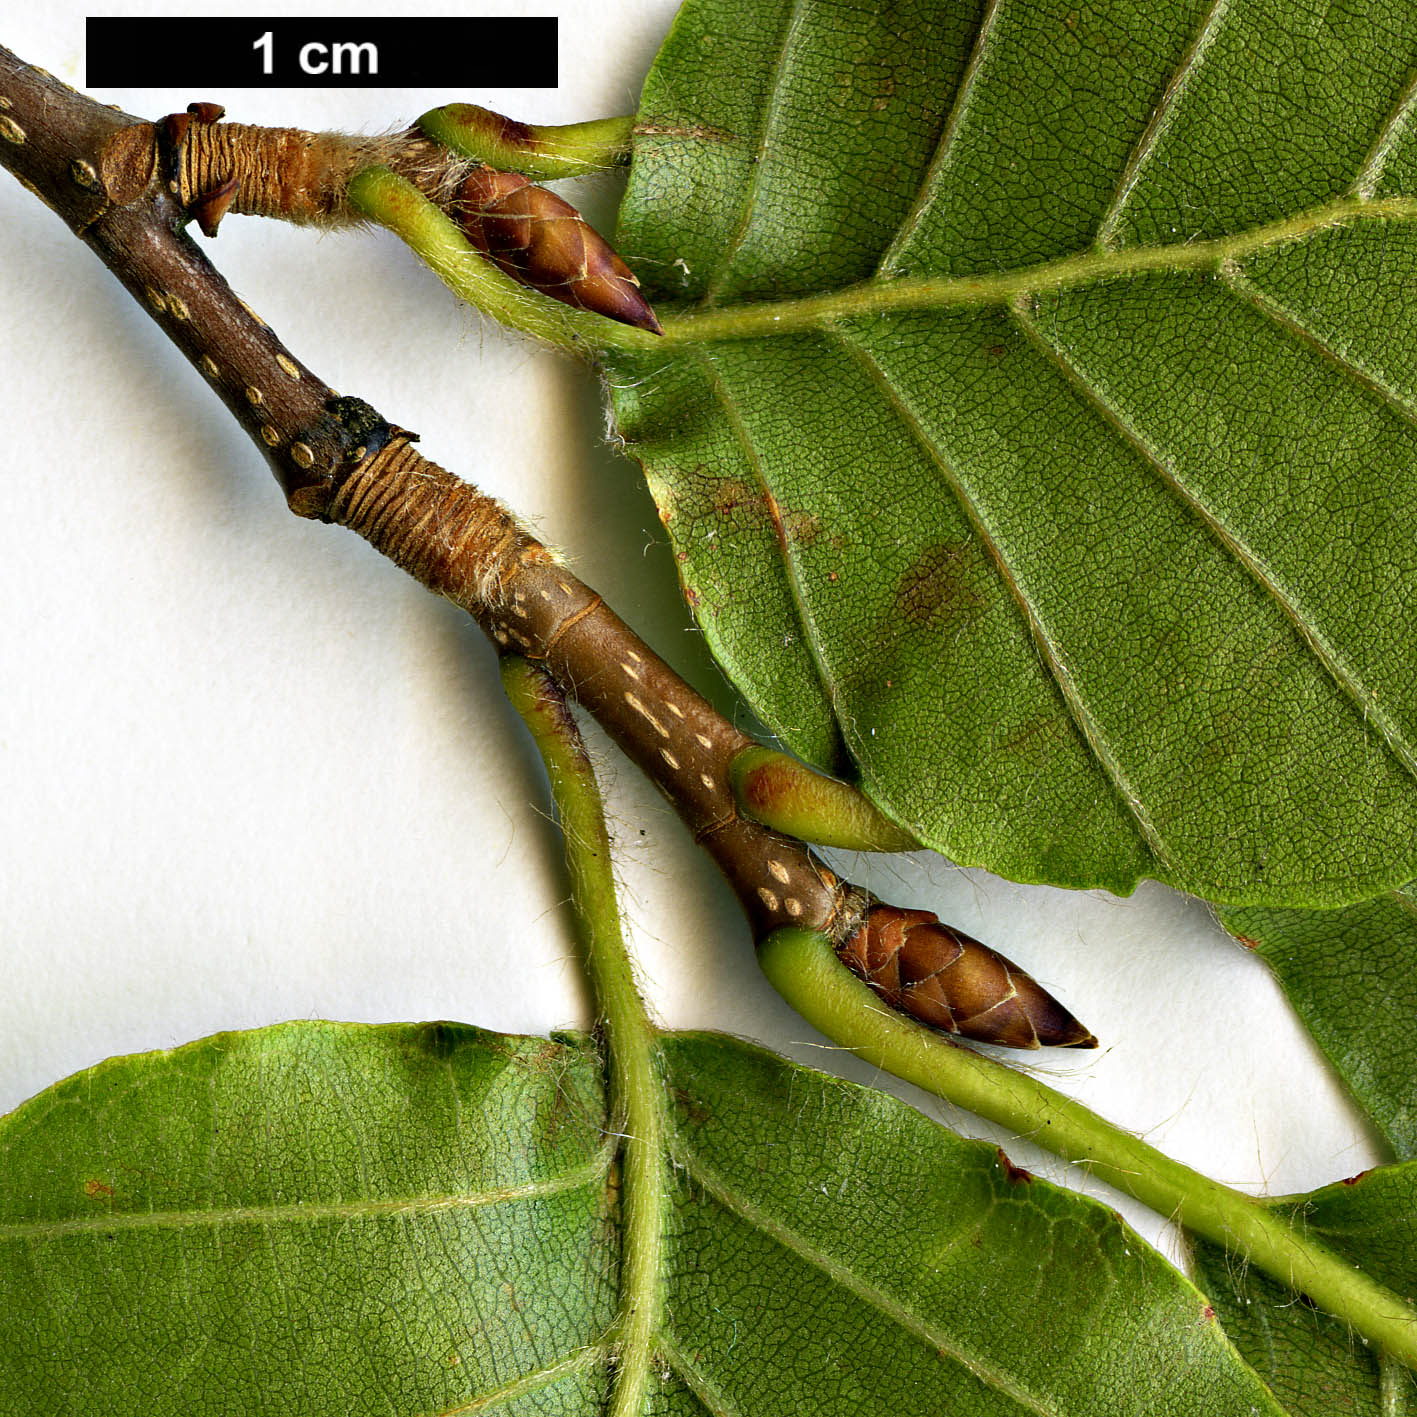 High resolution image: Family: Fagaceae - Genus: Fagus - Taxon: crenata